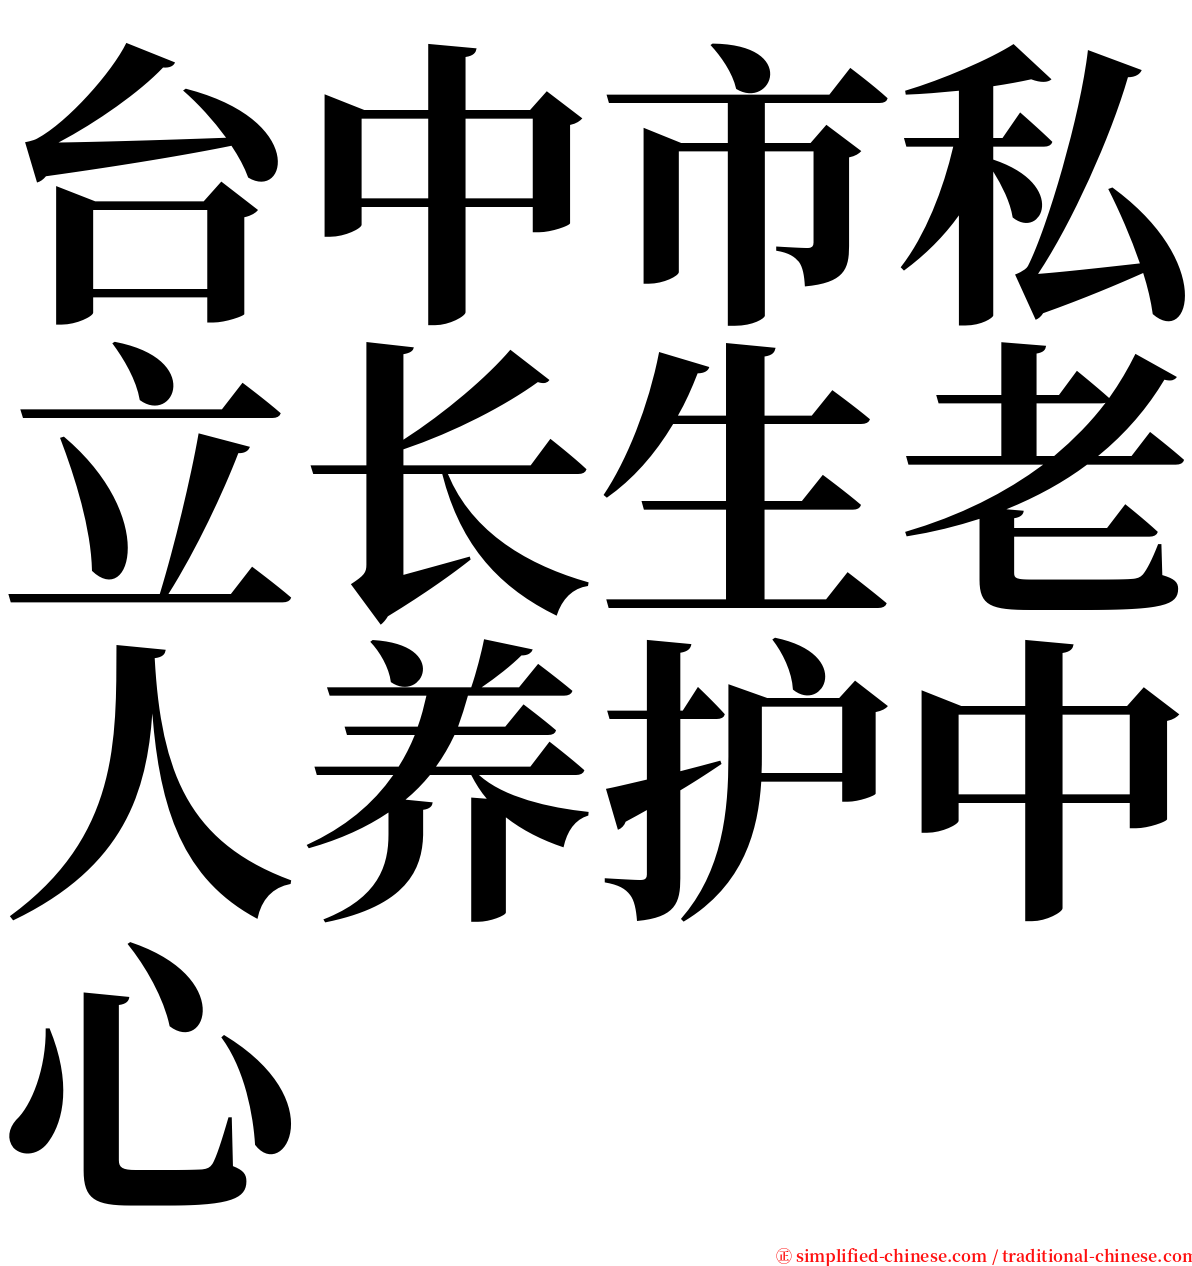 台中市私立长生老人养护中心 serif font